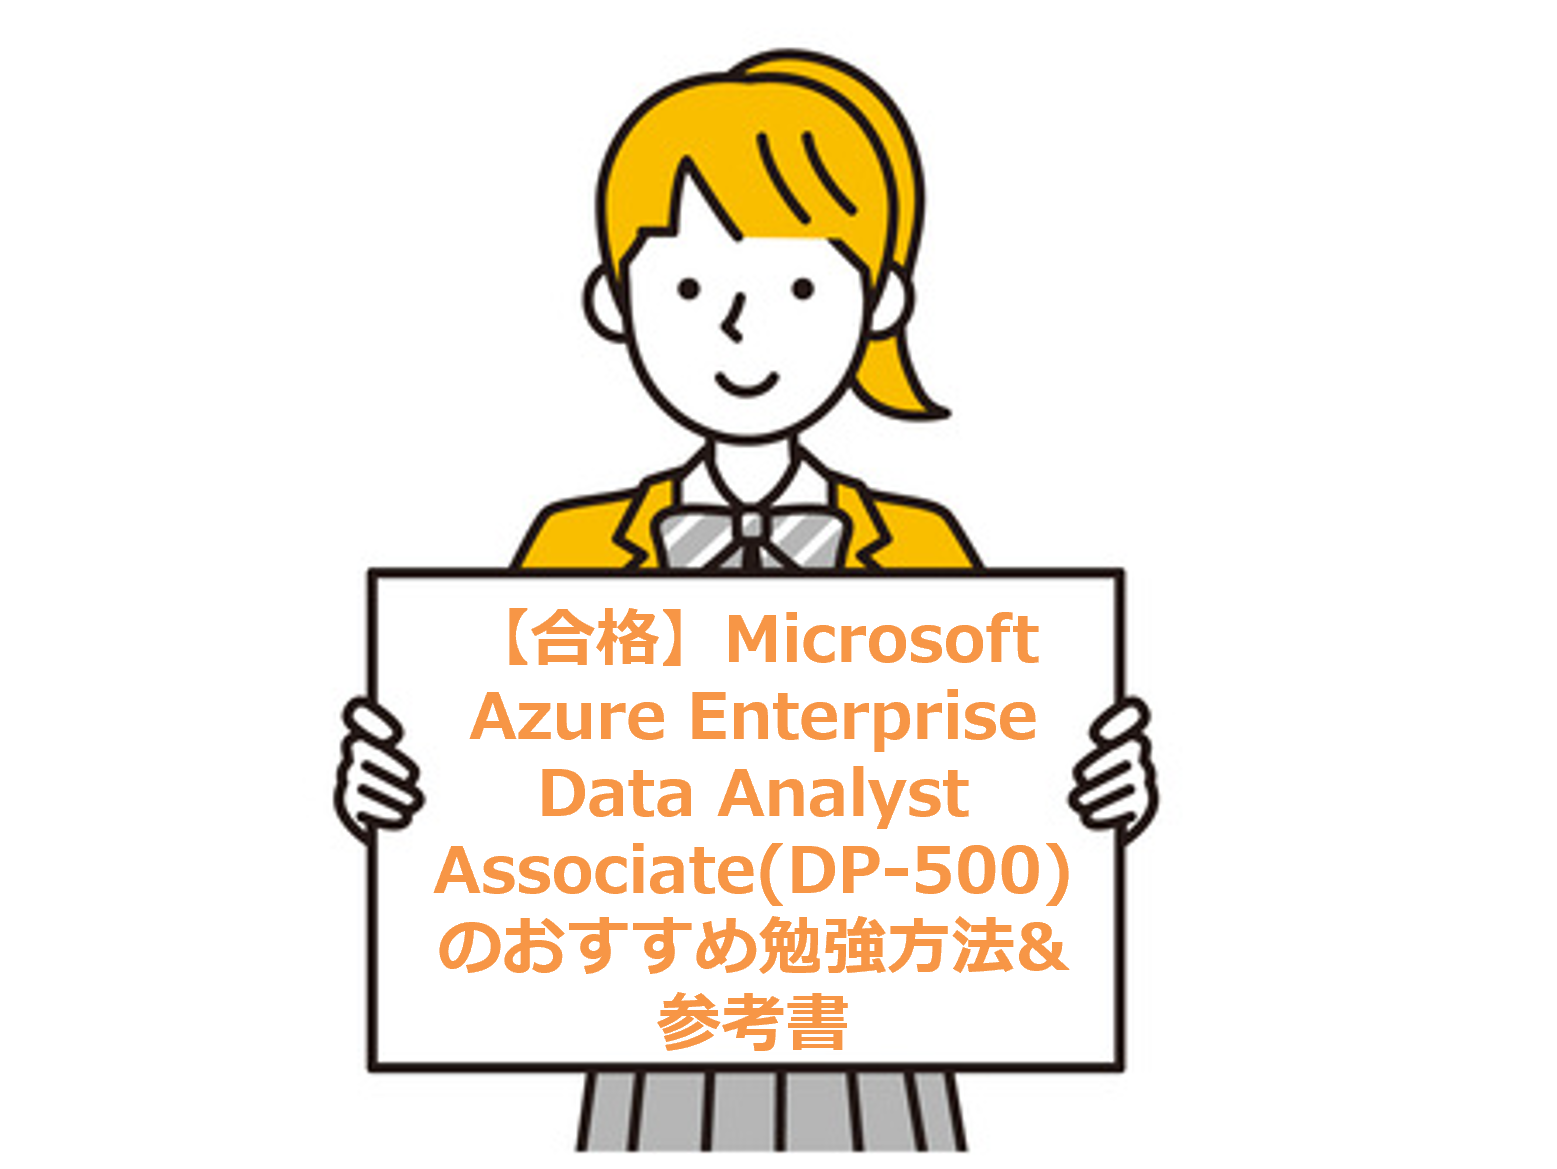 【合格】Microsoft Azure Enterprise Data Analyst Associate(DP-500)のおすすめ勉強方法&参考書